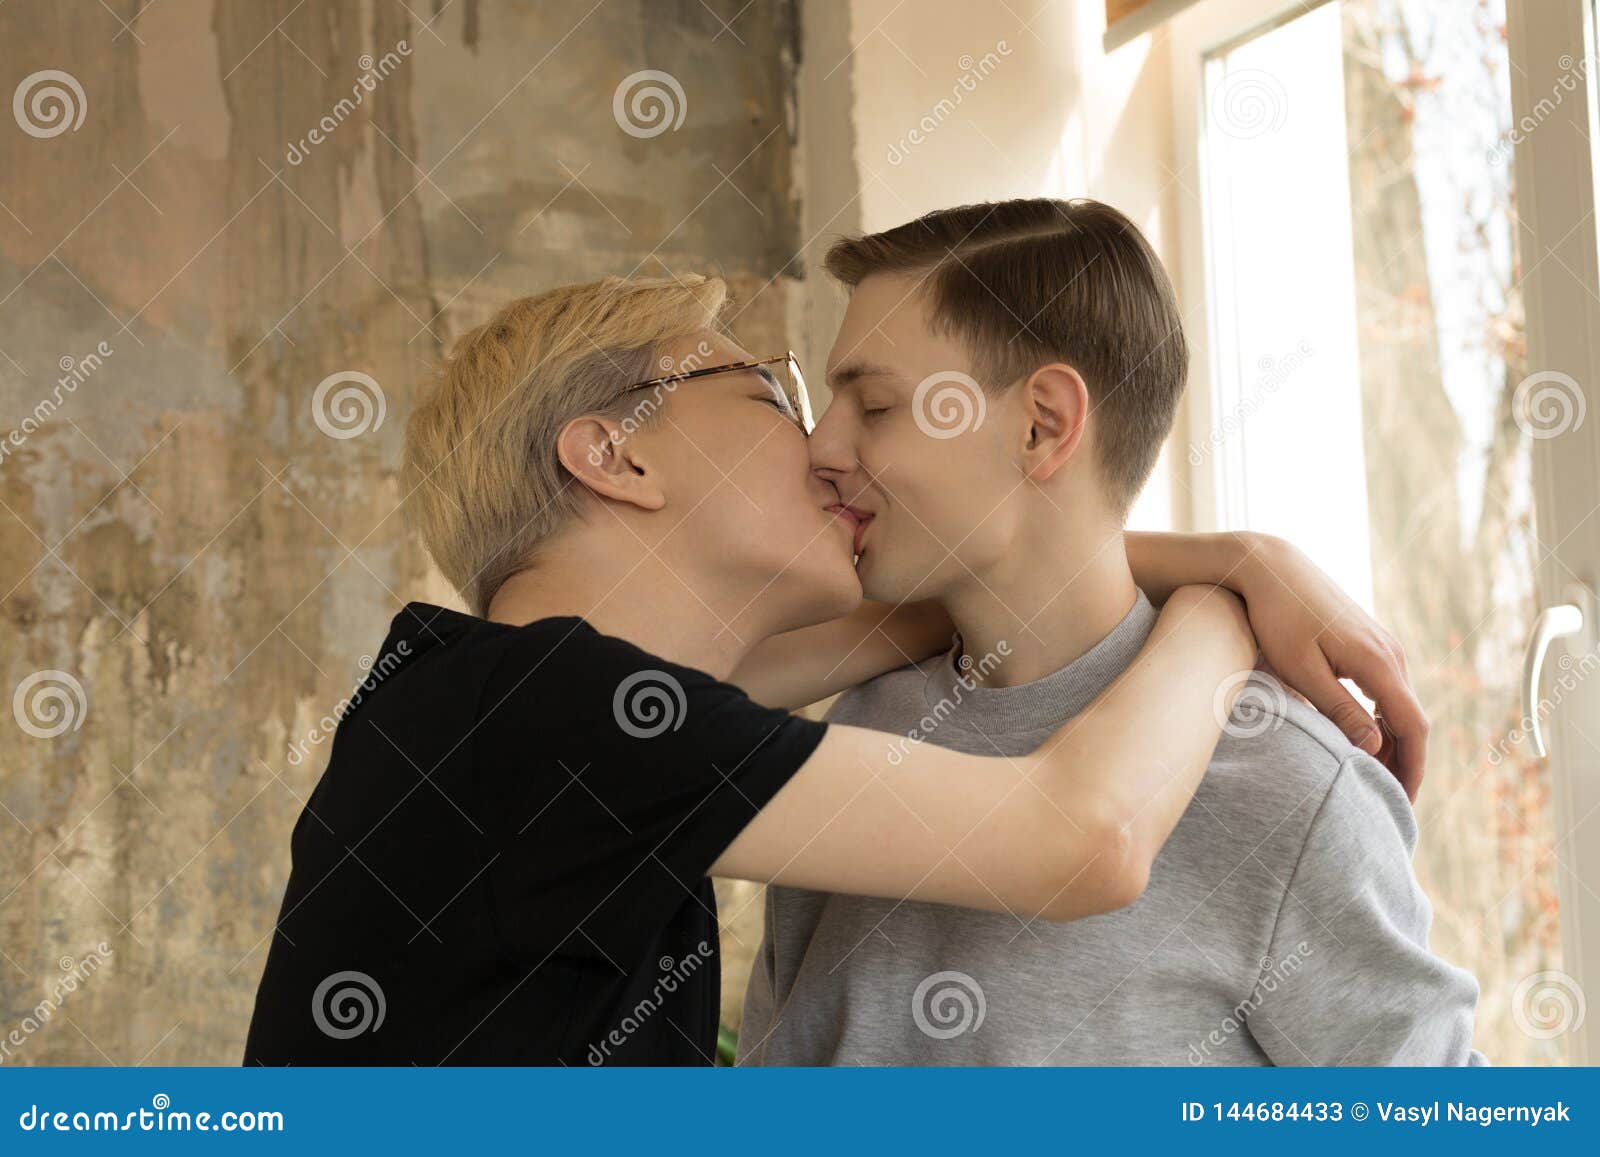 Homosexual haciendo el amor